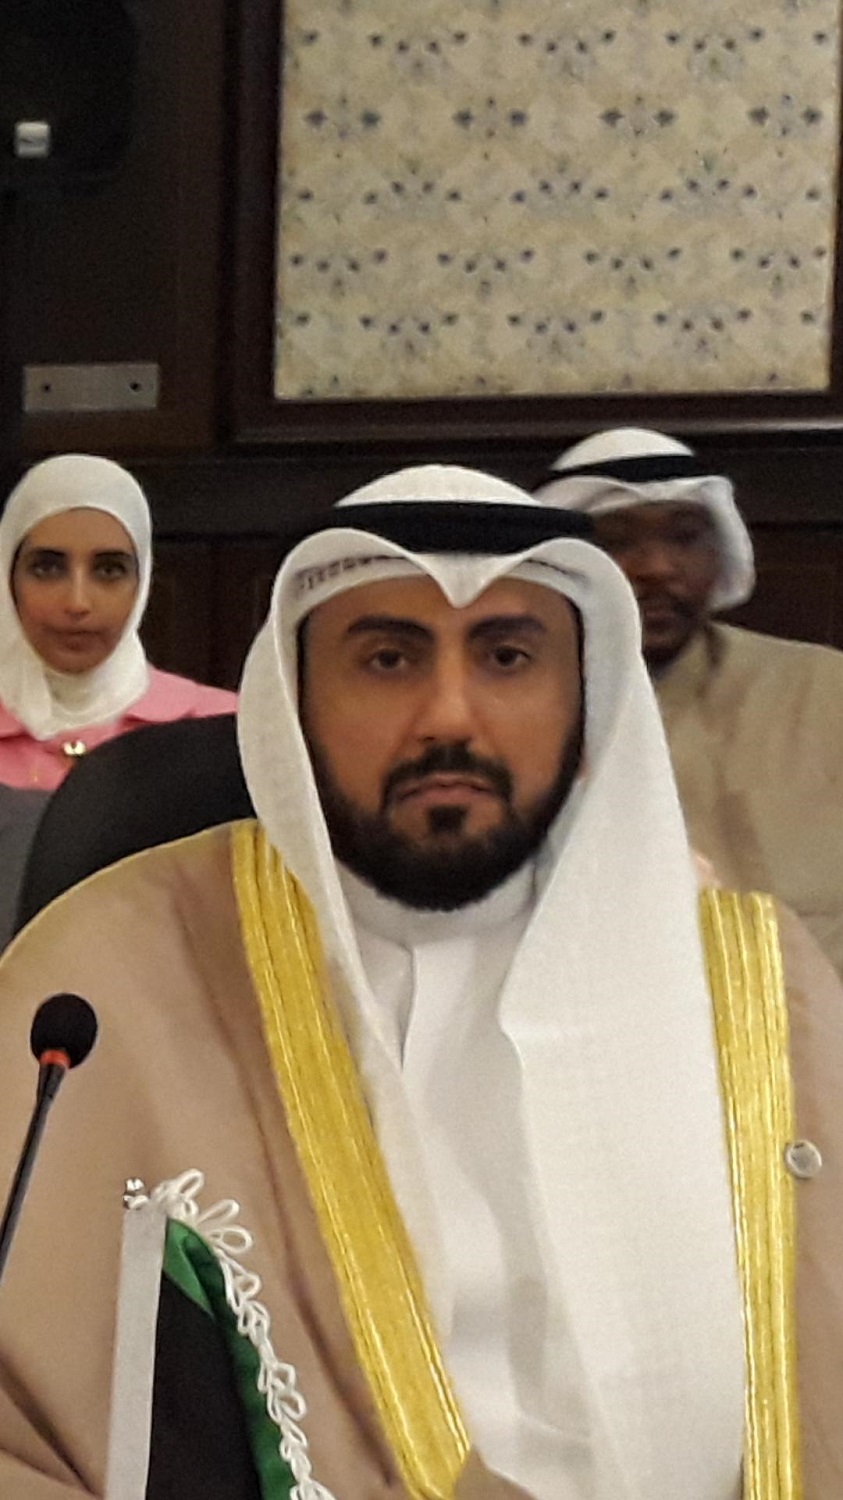 Kuwait's health minister Dr. Sheikh Basel Al-Sabah